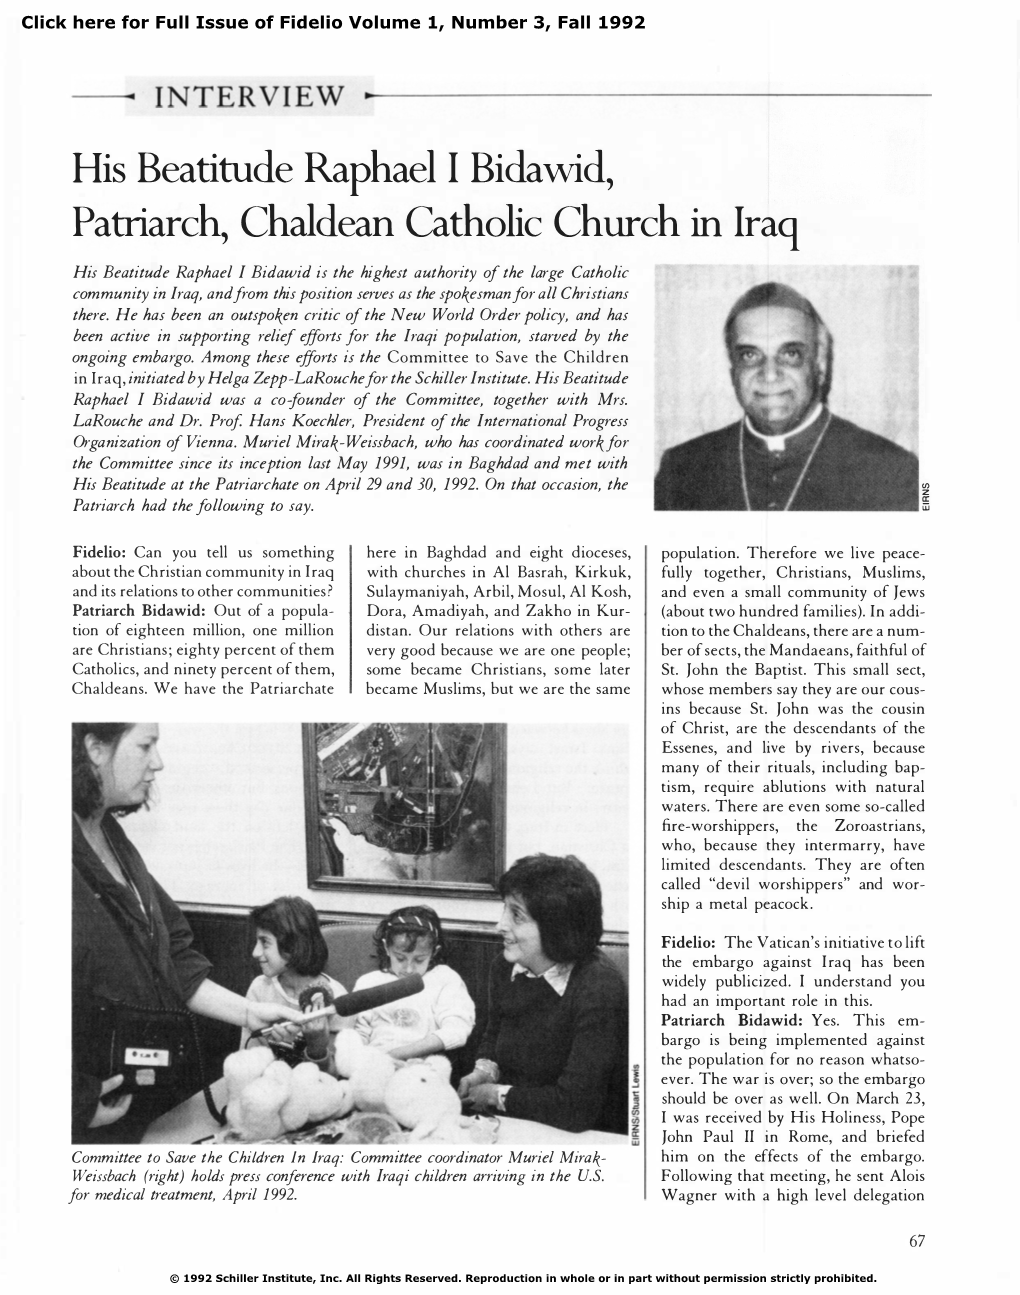 Iraq's Patriarch Raphael I Bidawid